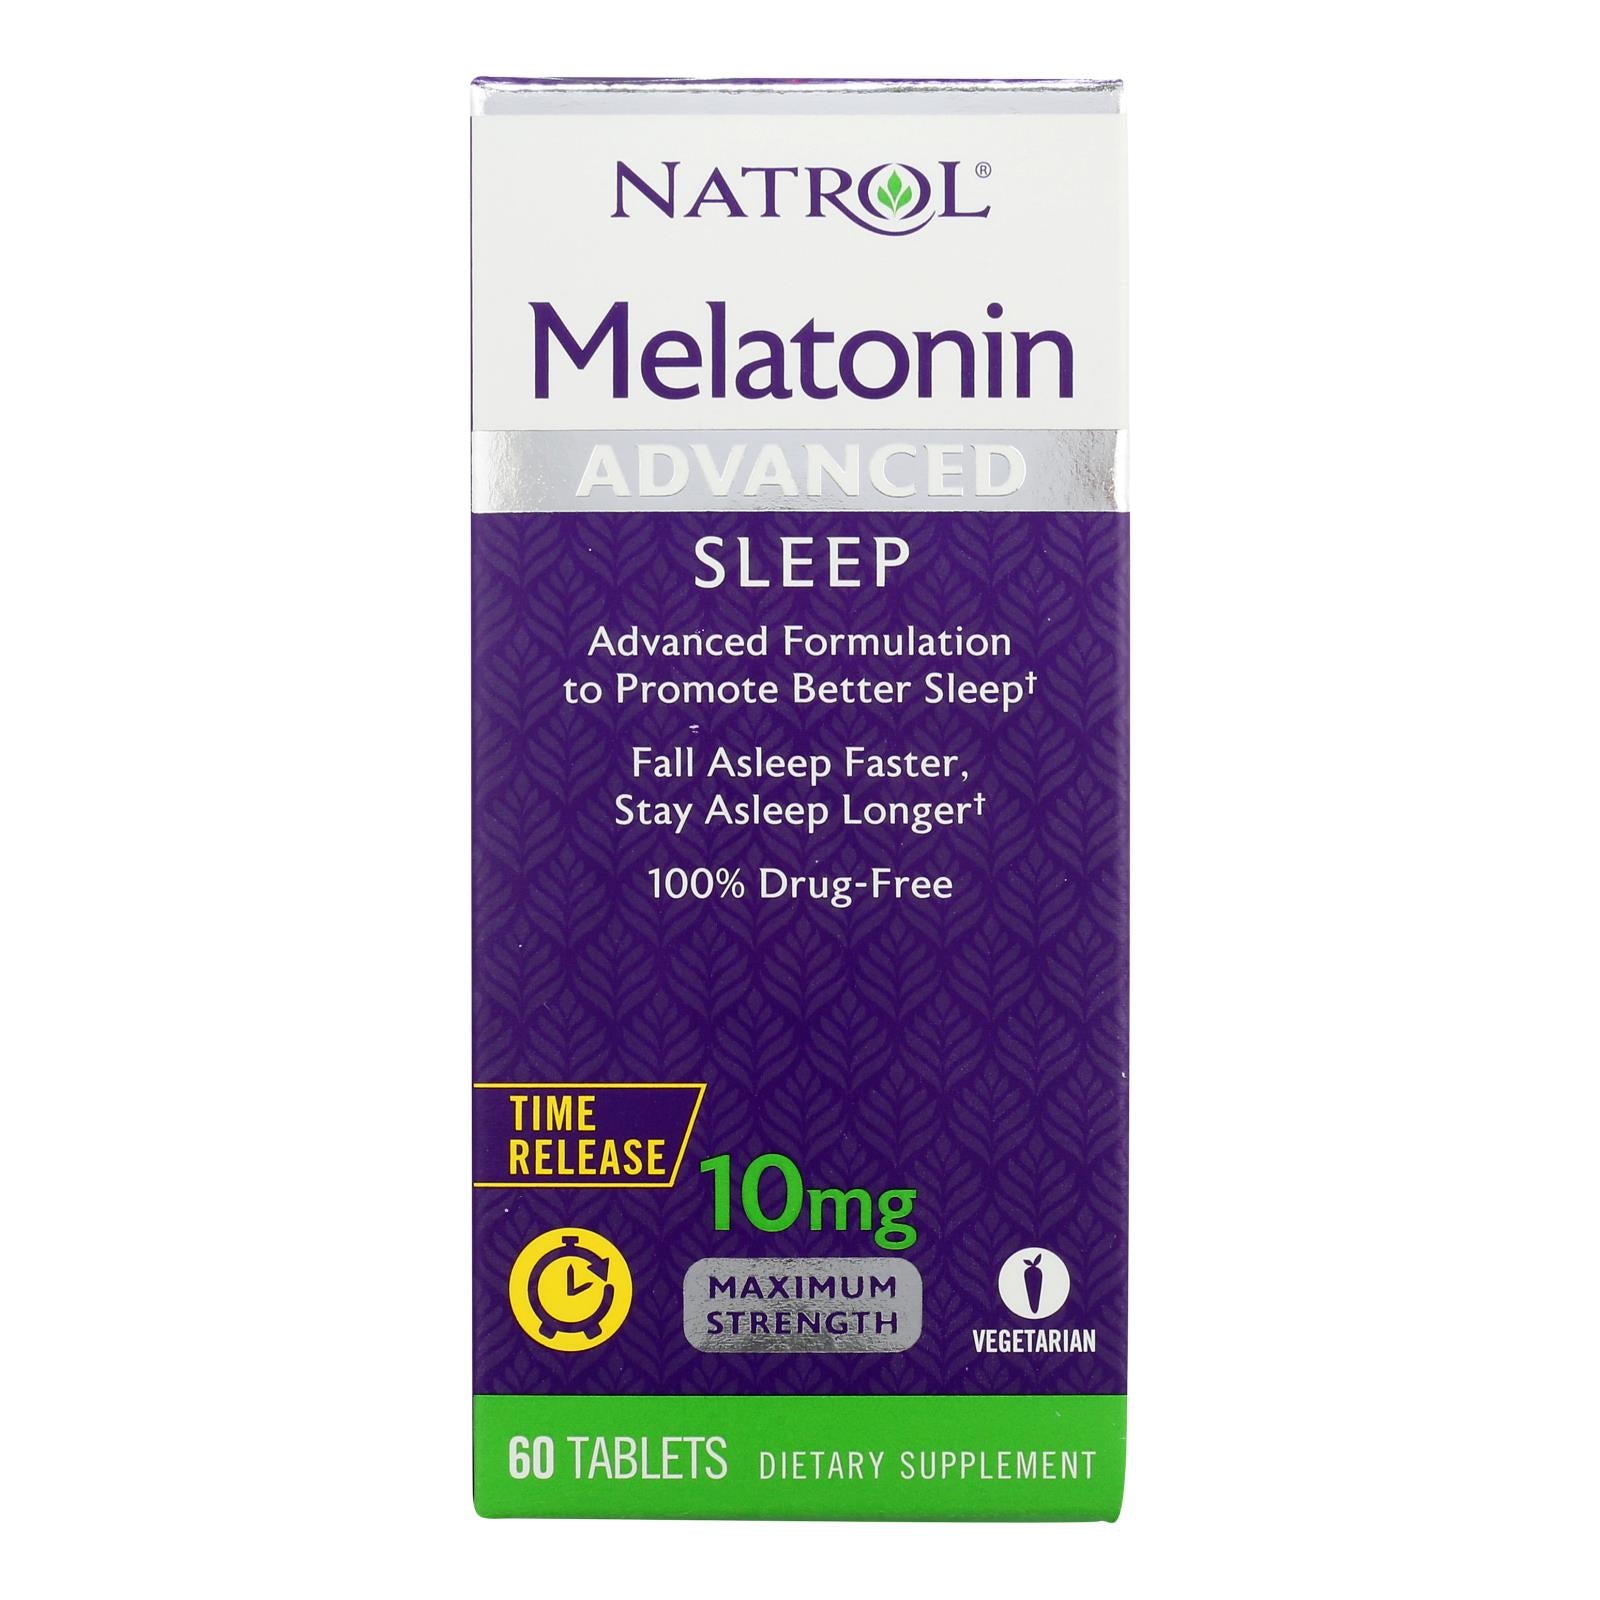 Natrol Advanced Sleep Melatonin - 10 Mg - 60 Tablets